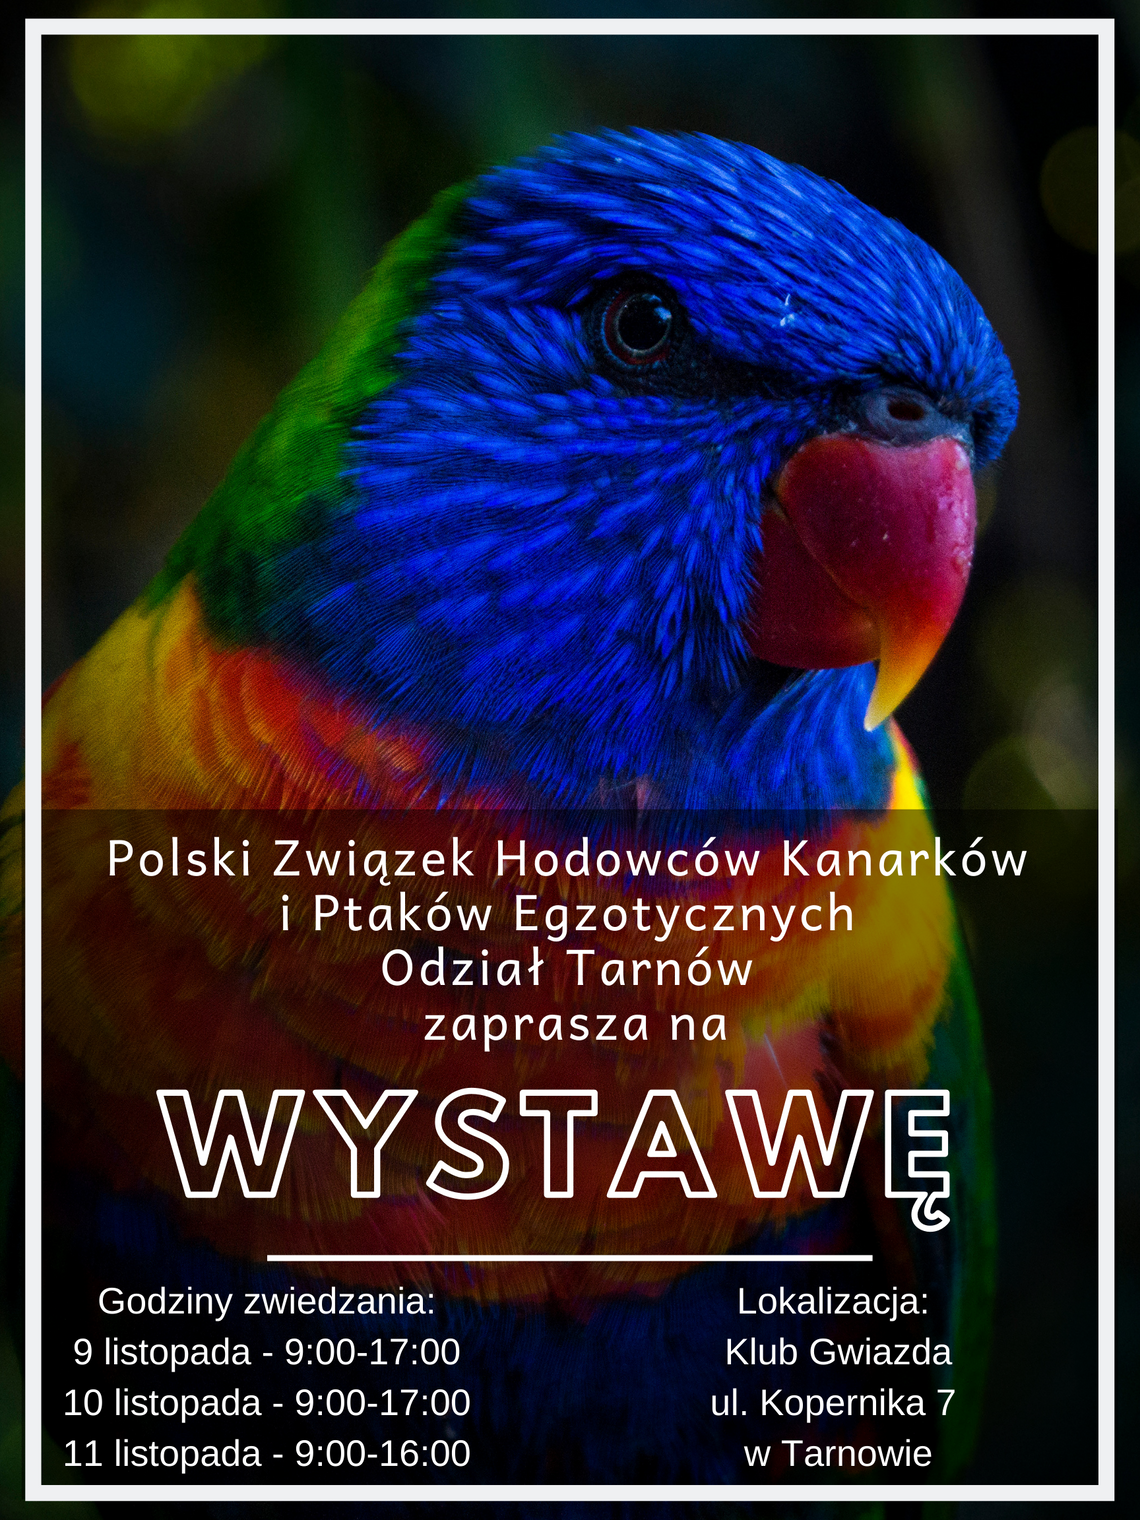 Wystawa Kanarków i Ptaków Egzotycznych 2019 w Tarnowie!